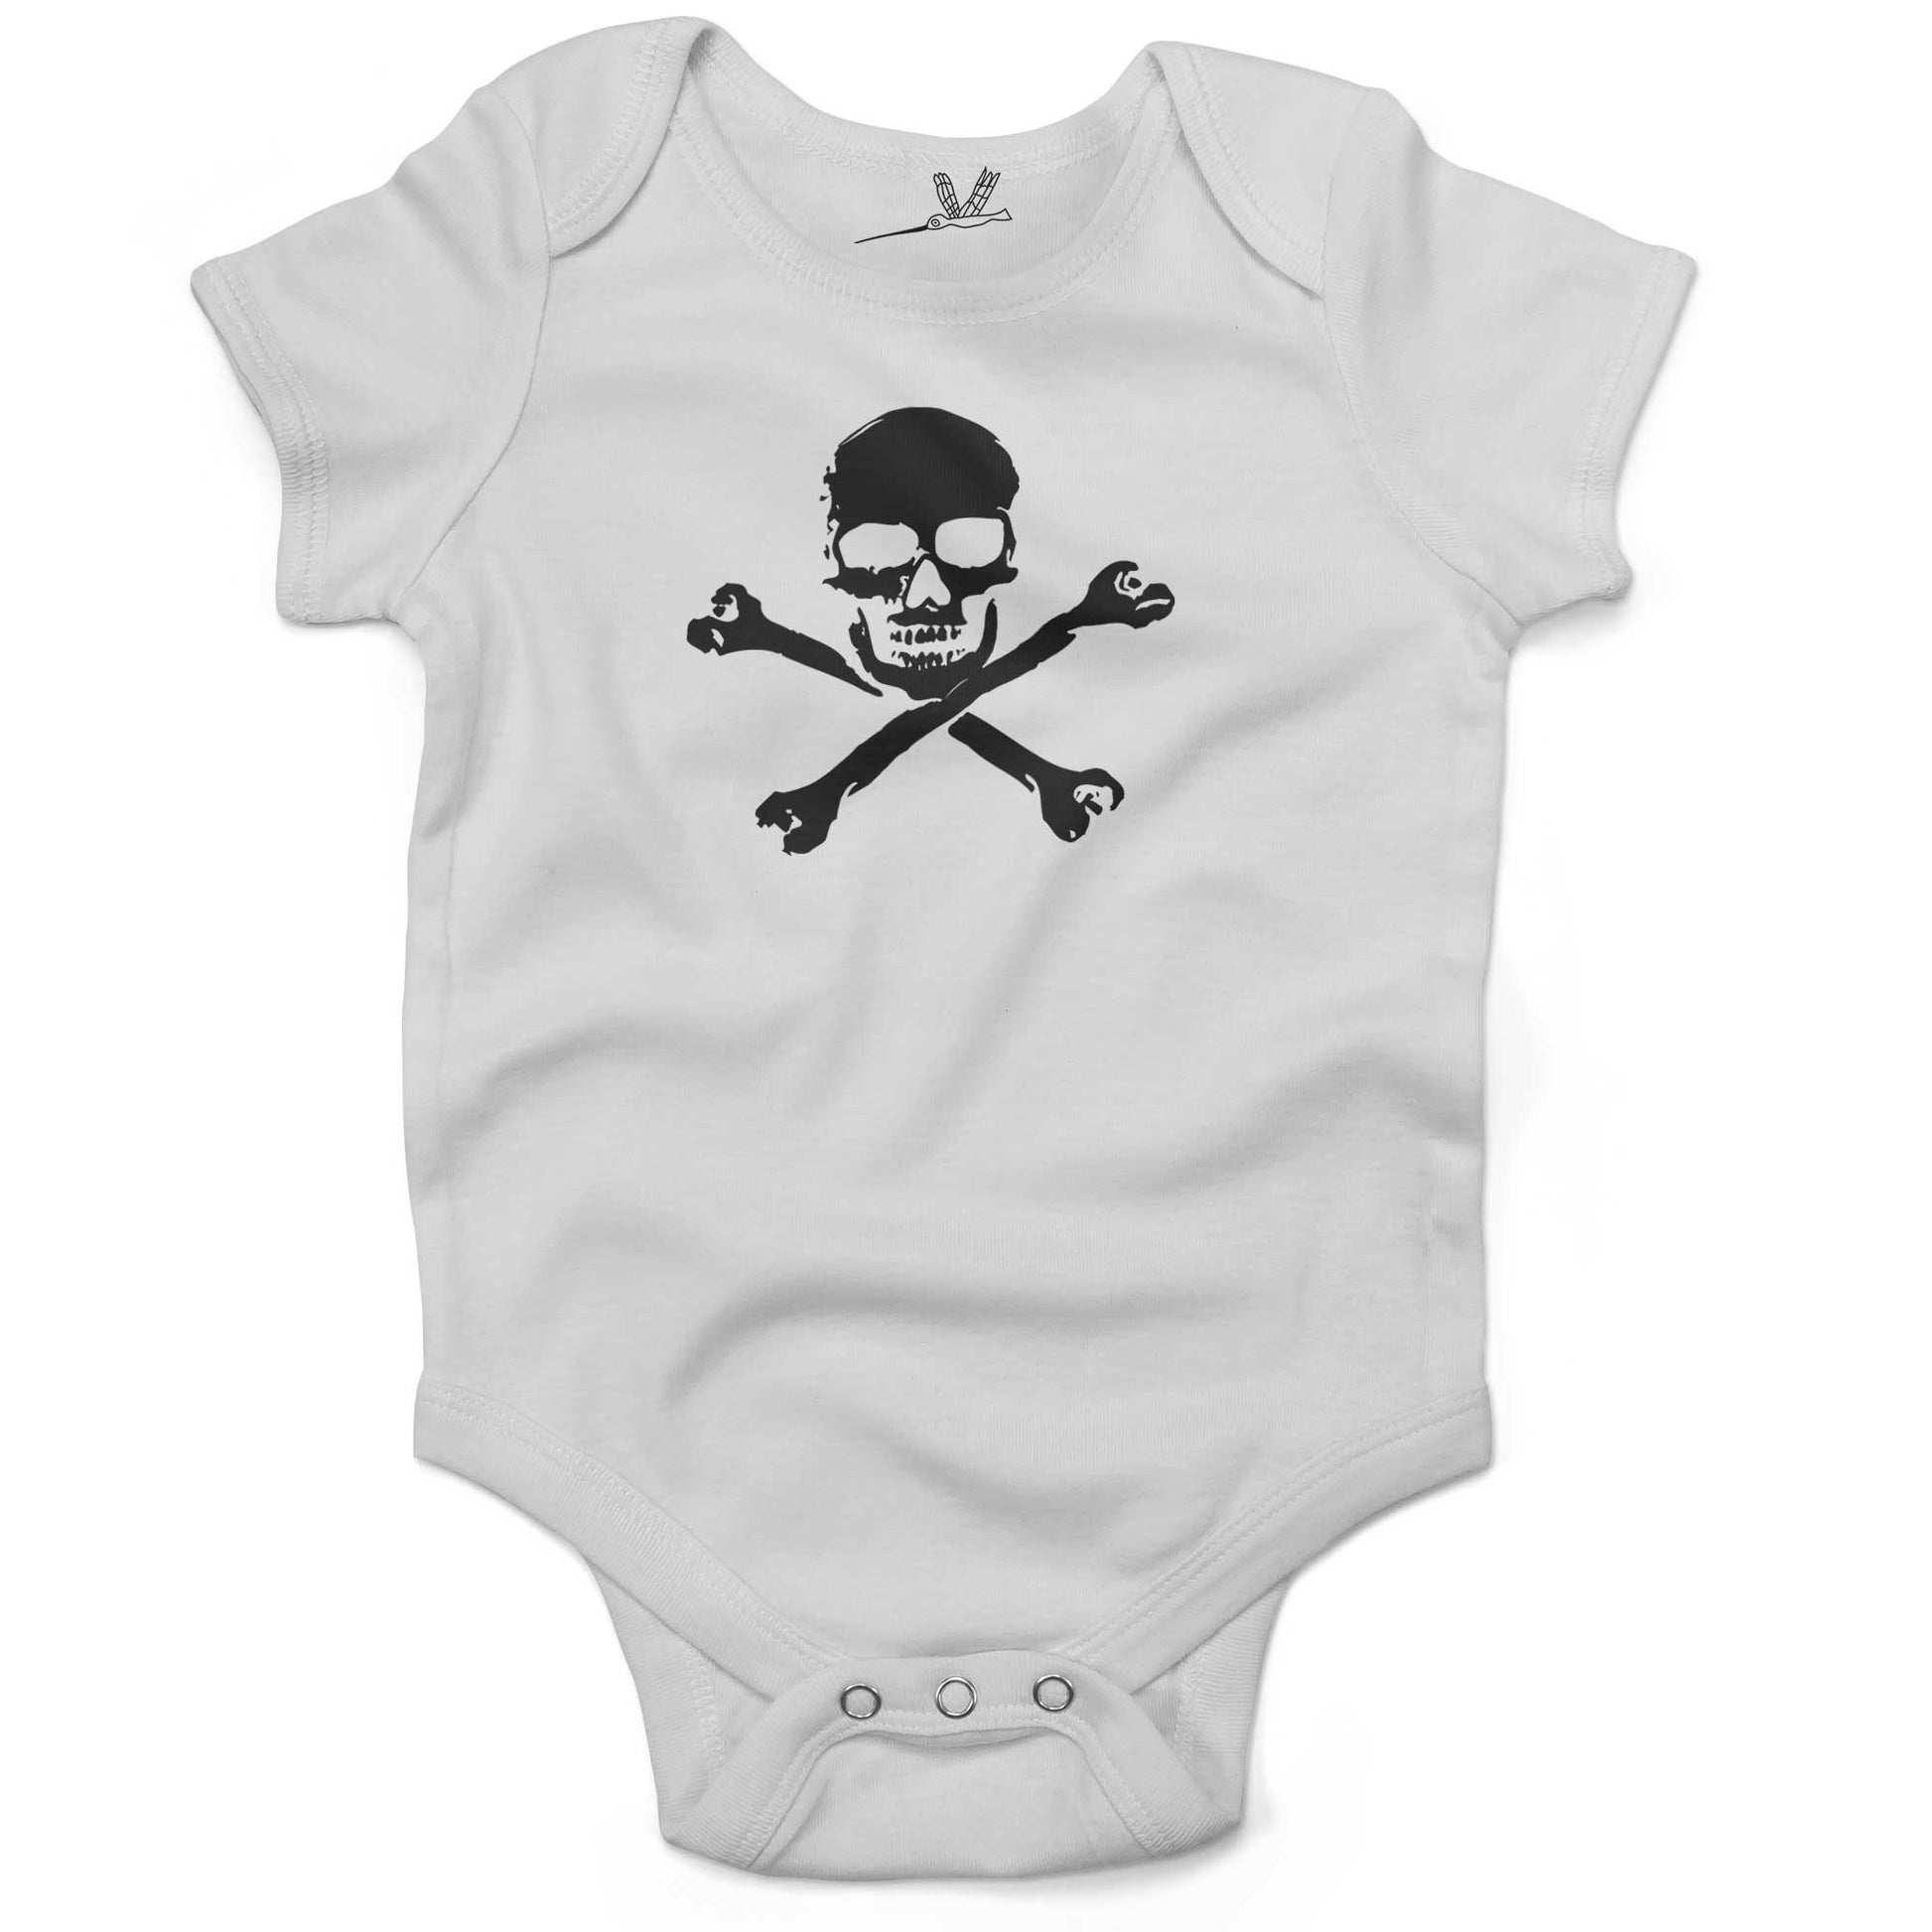 Skull Infant Bodysuit or Raglan Tee-White-3-6 months